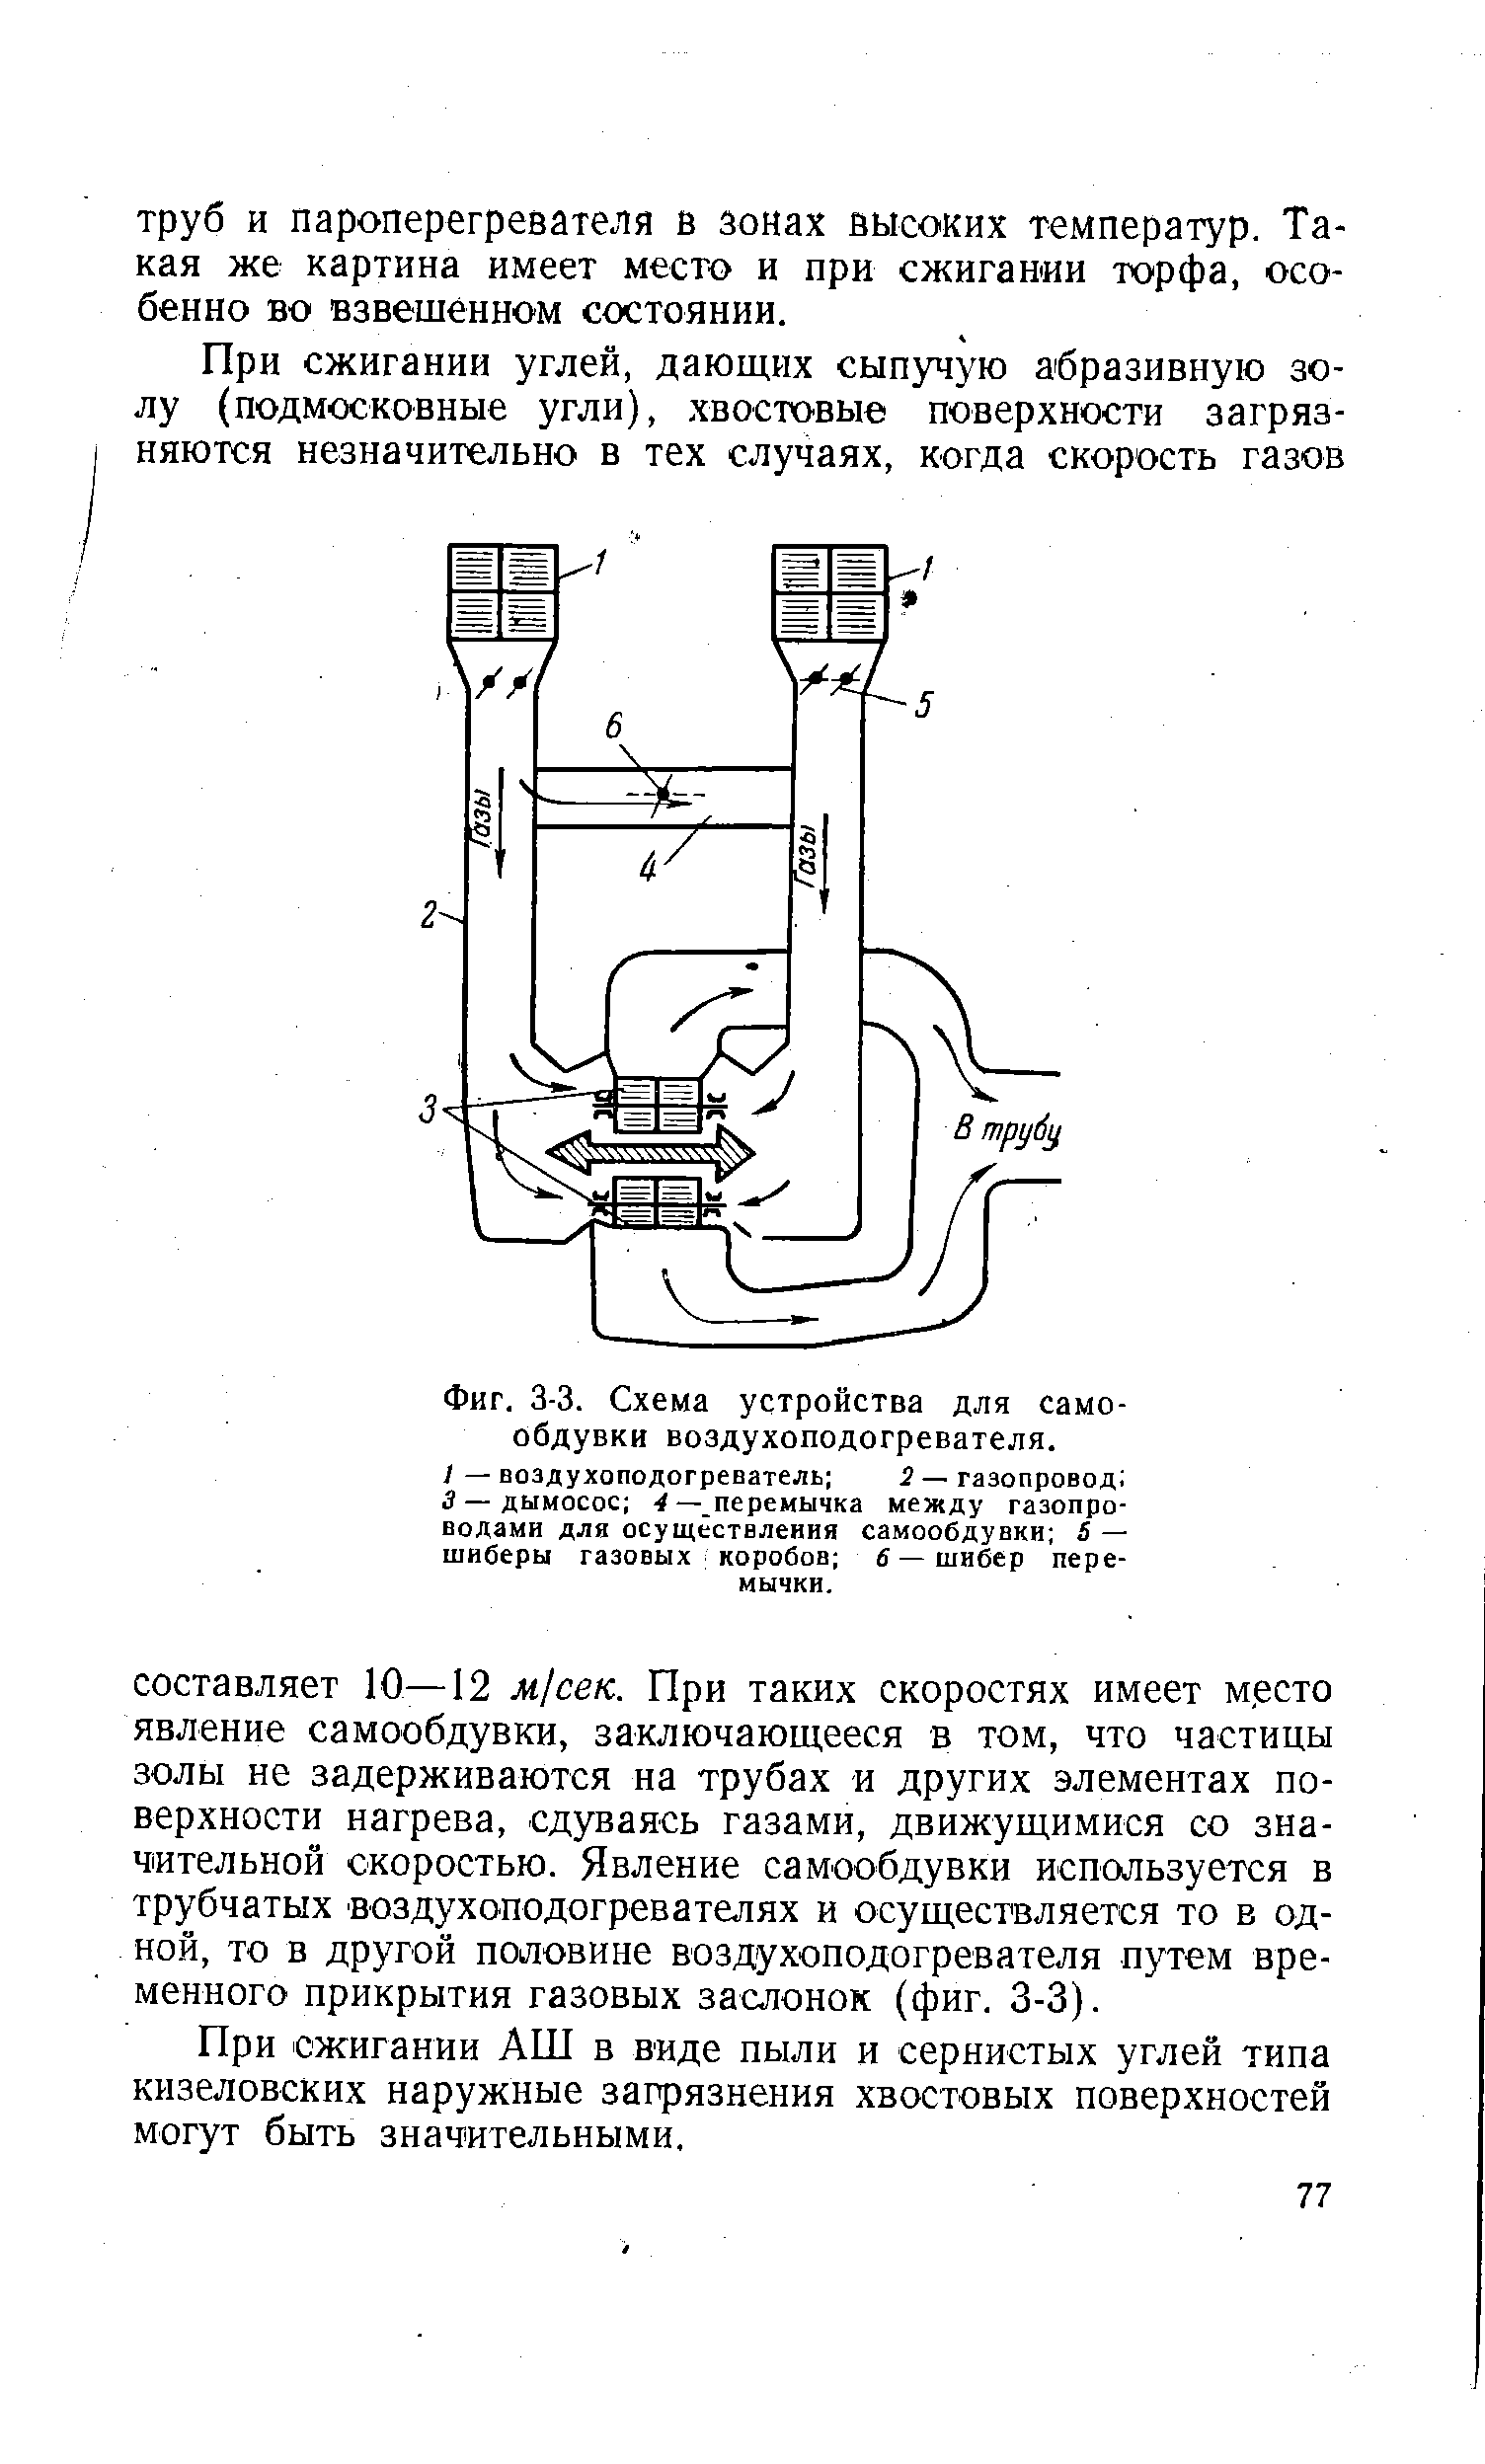 Фиг. 3-3. Схема устройства для само-обдувки воздухоподогревателя.
